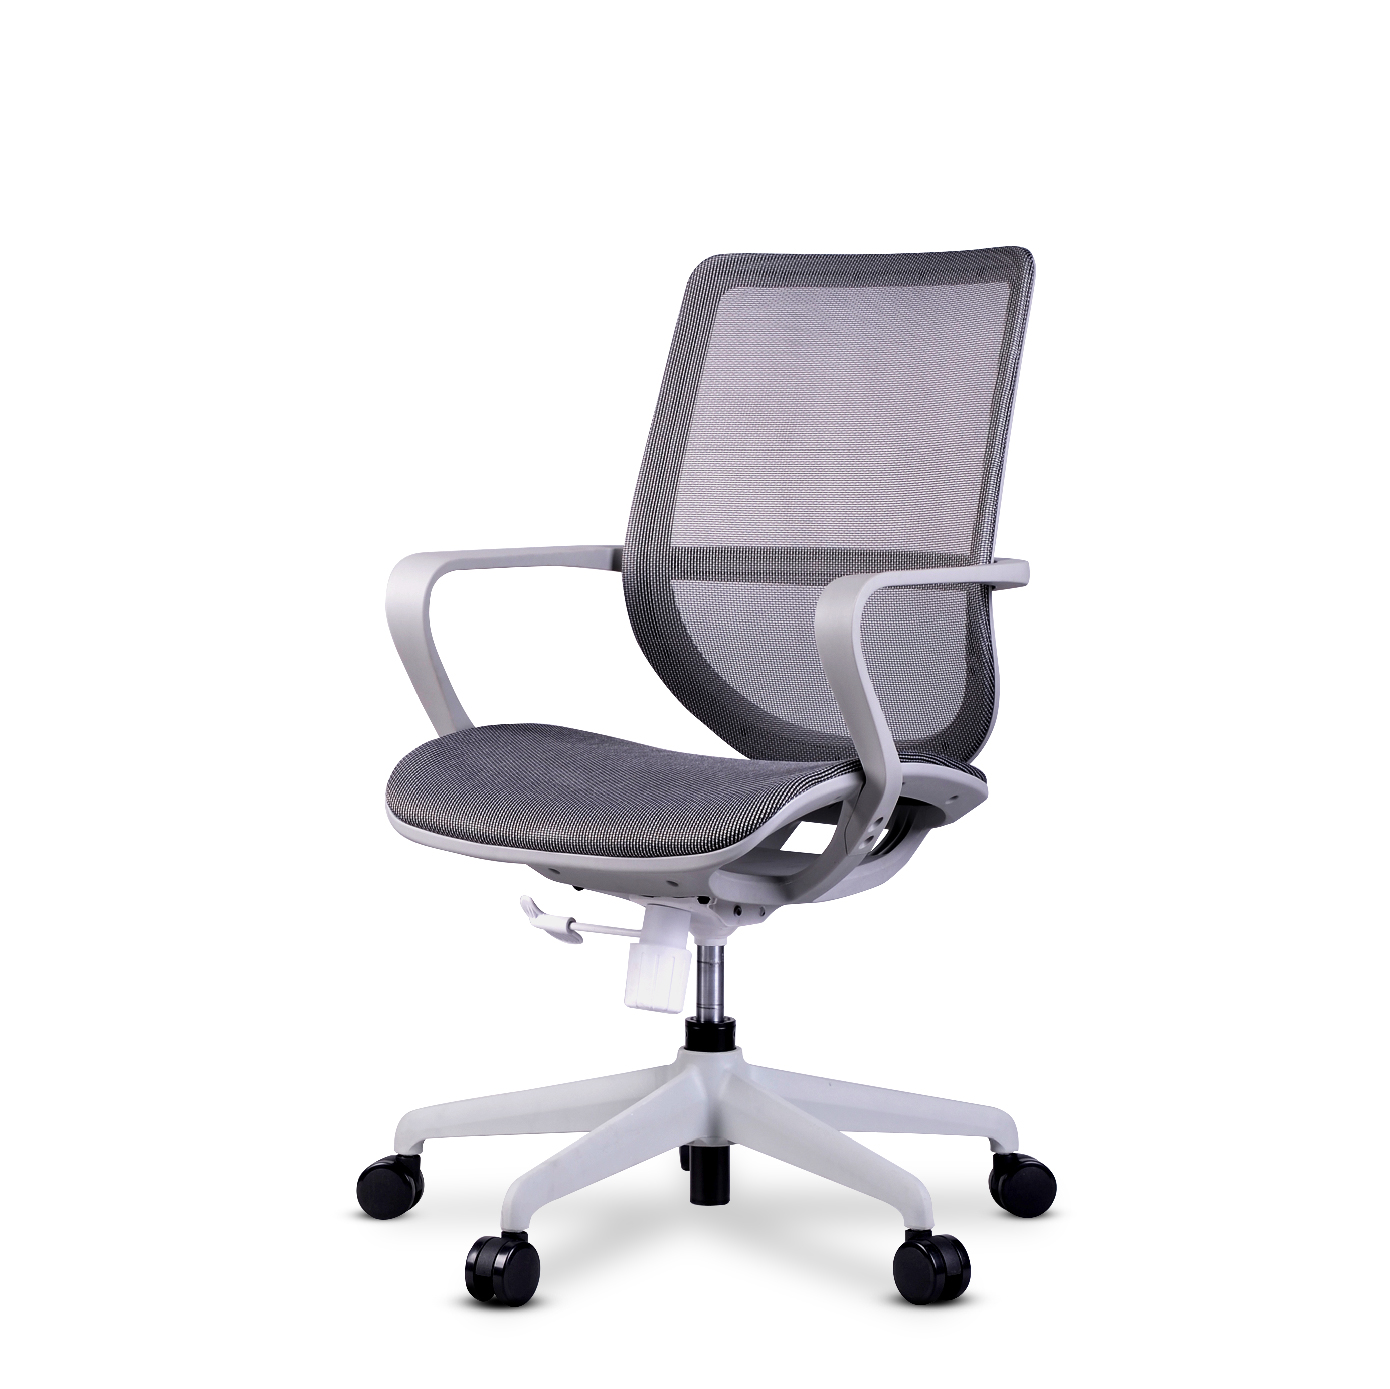 D Series – Denver Office Chair